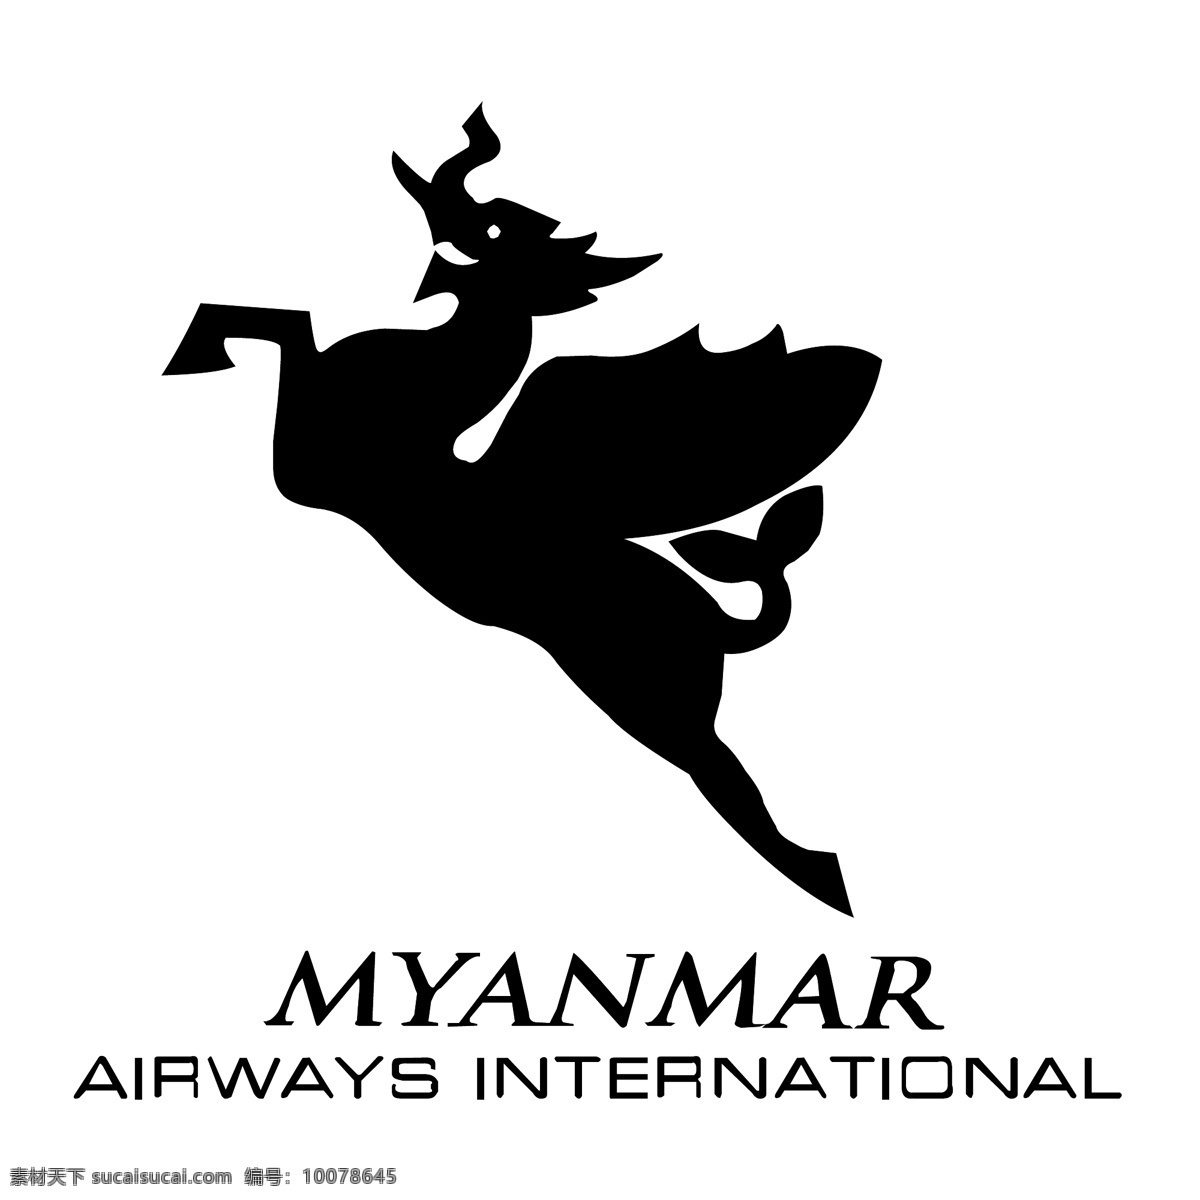 缅甸 航空公司 自由 航空 标志 标识 psd源文件 logo设计